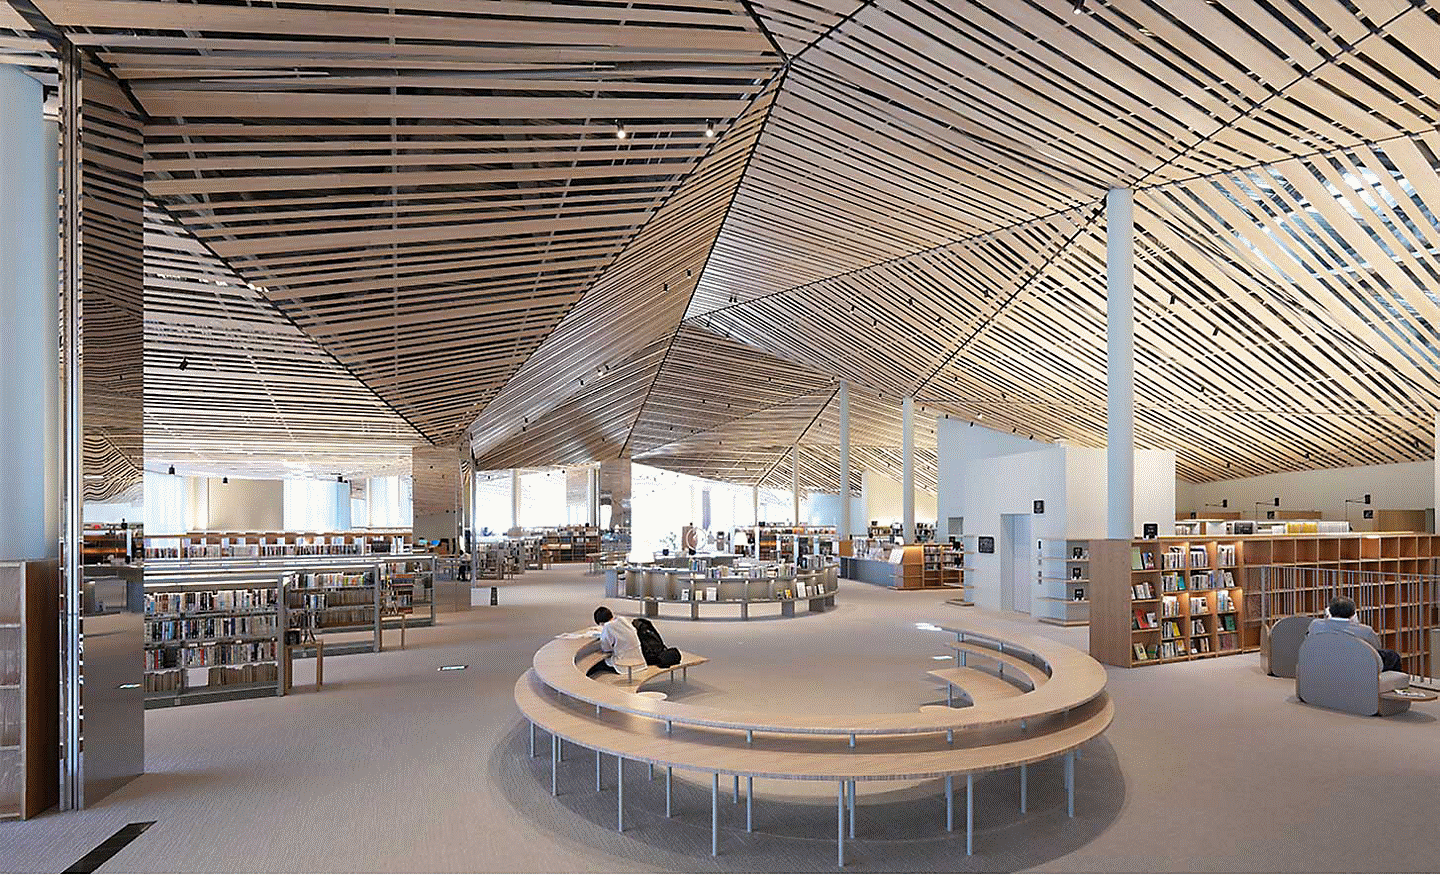 Imagen del interior de una gran biblioteca con un elaborado diseño compuesto por muchos tablones de madera rectos en el techo, con resolución en toda la pantalla